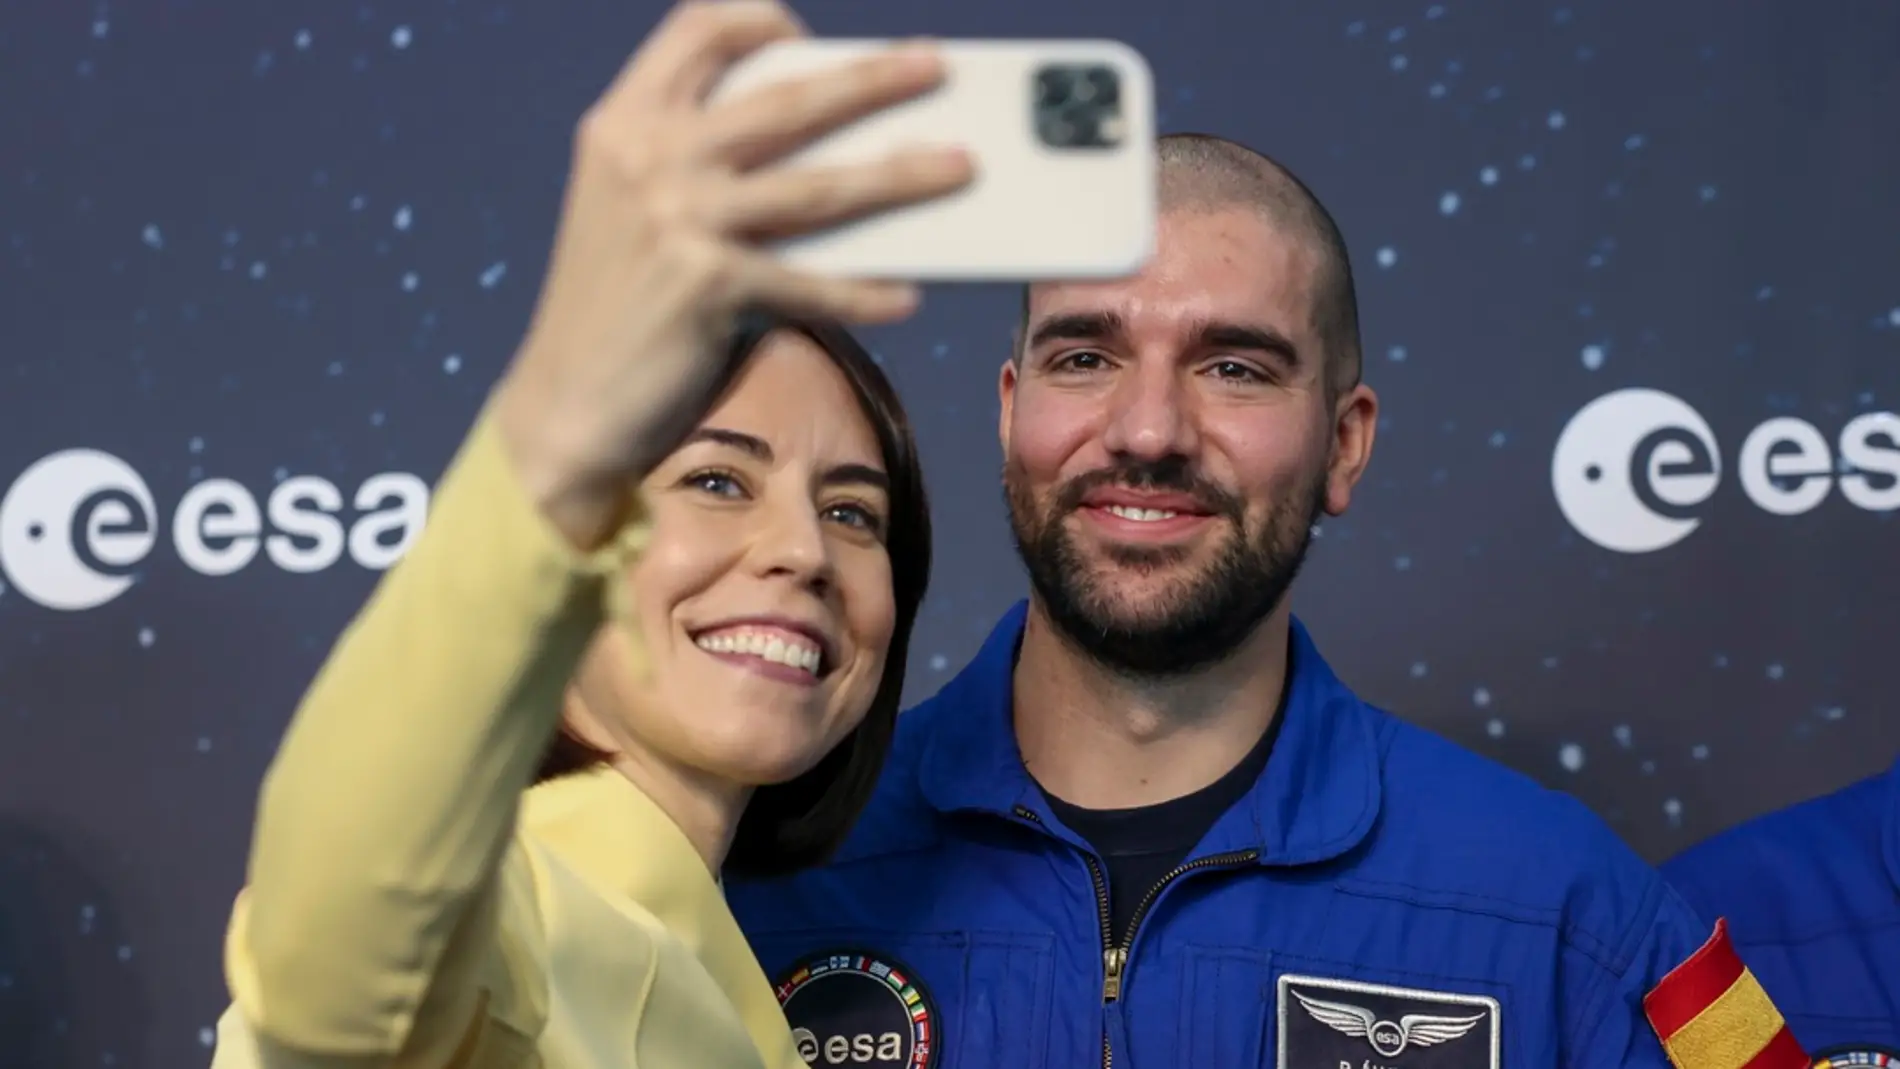 La ministra Diana Morant junto al astronauta español Pablo Álvarez/ EFE/EPA/CHRISTOPHER NEUNDORF